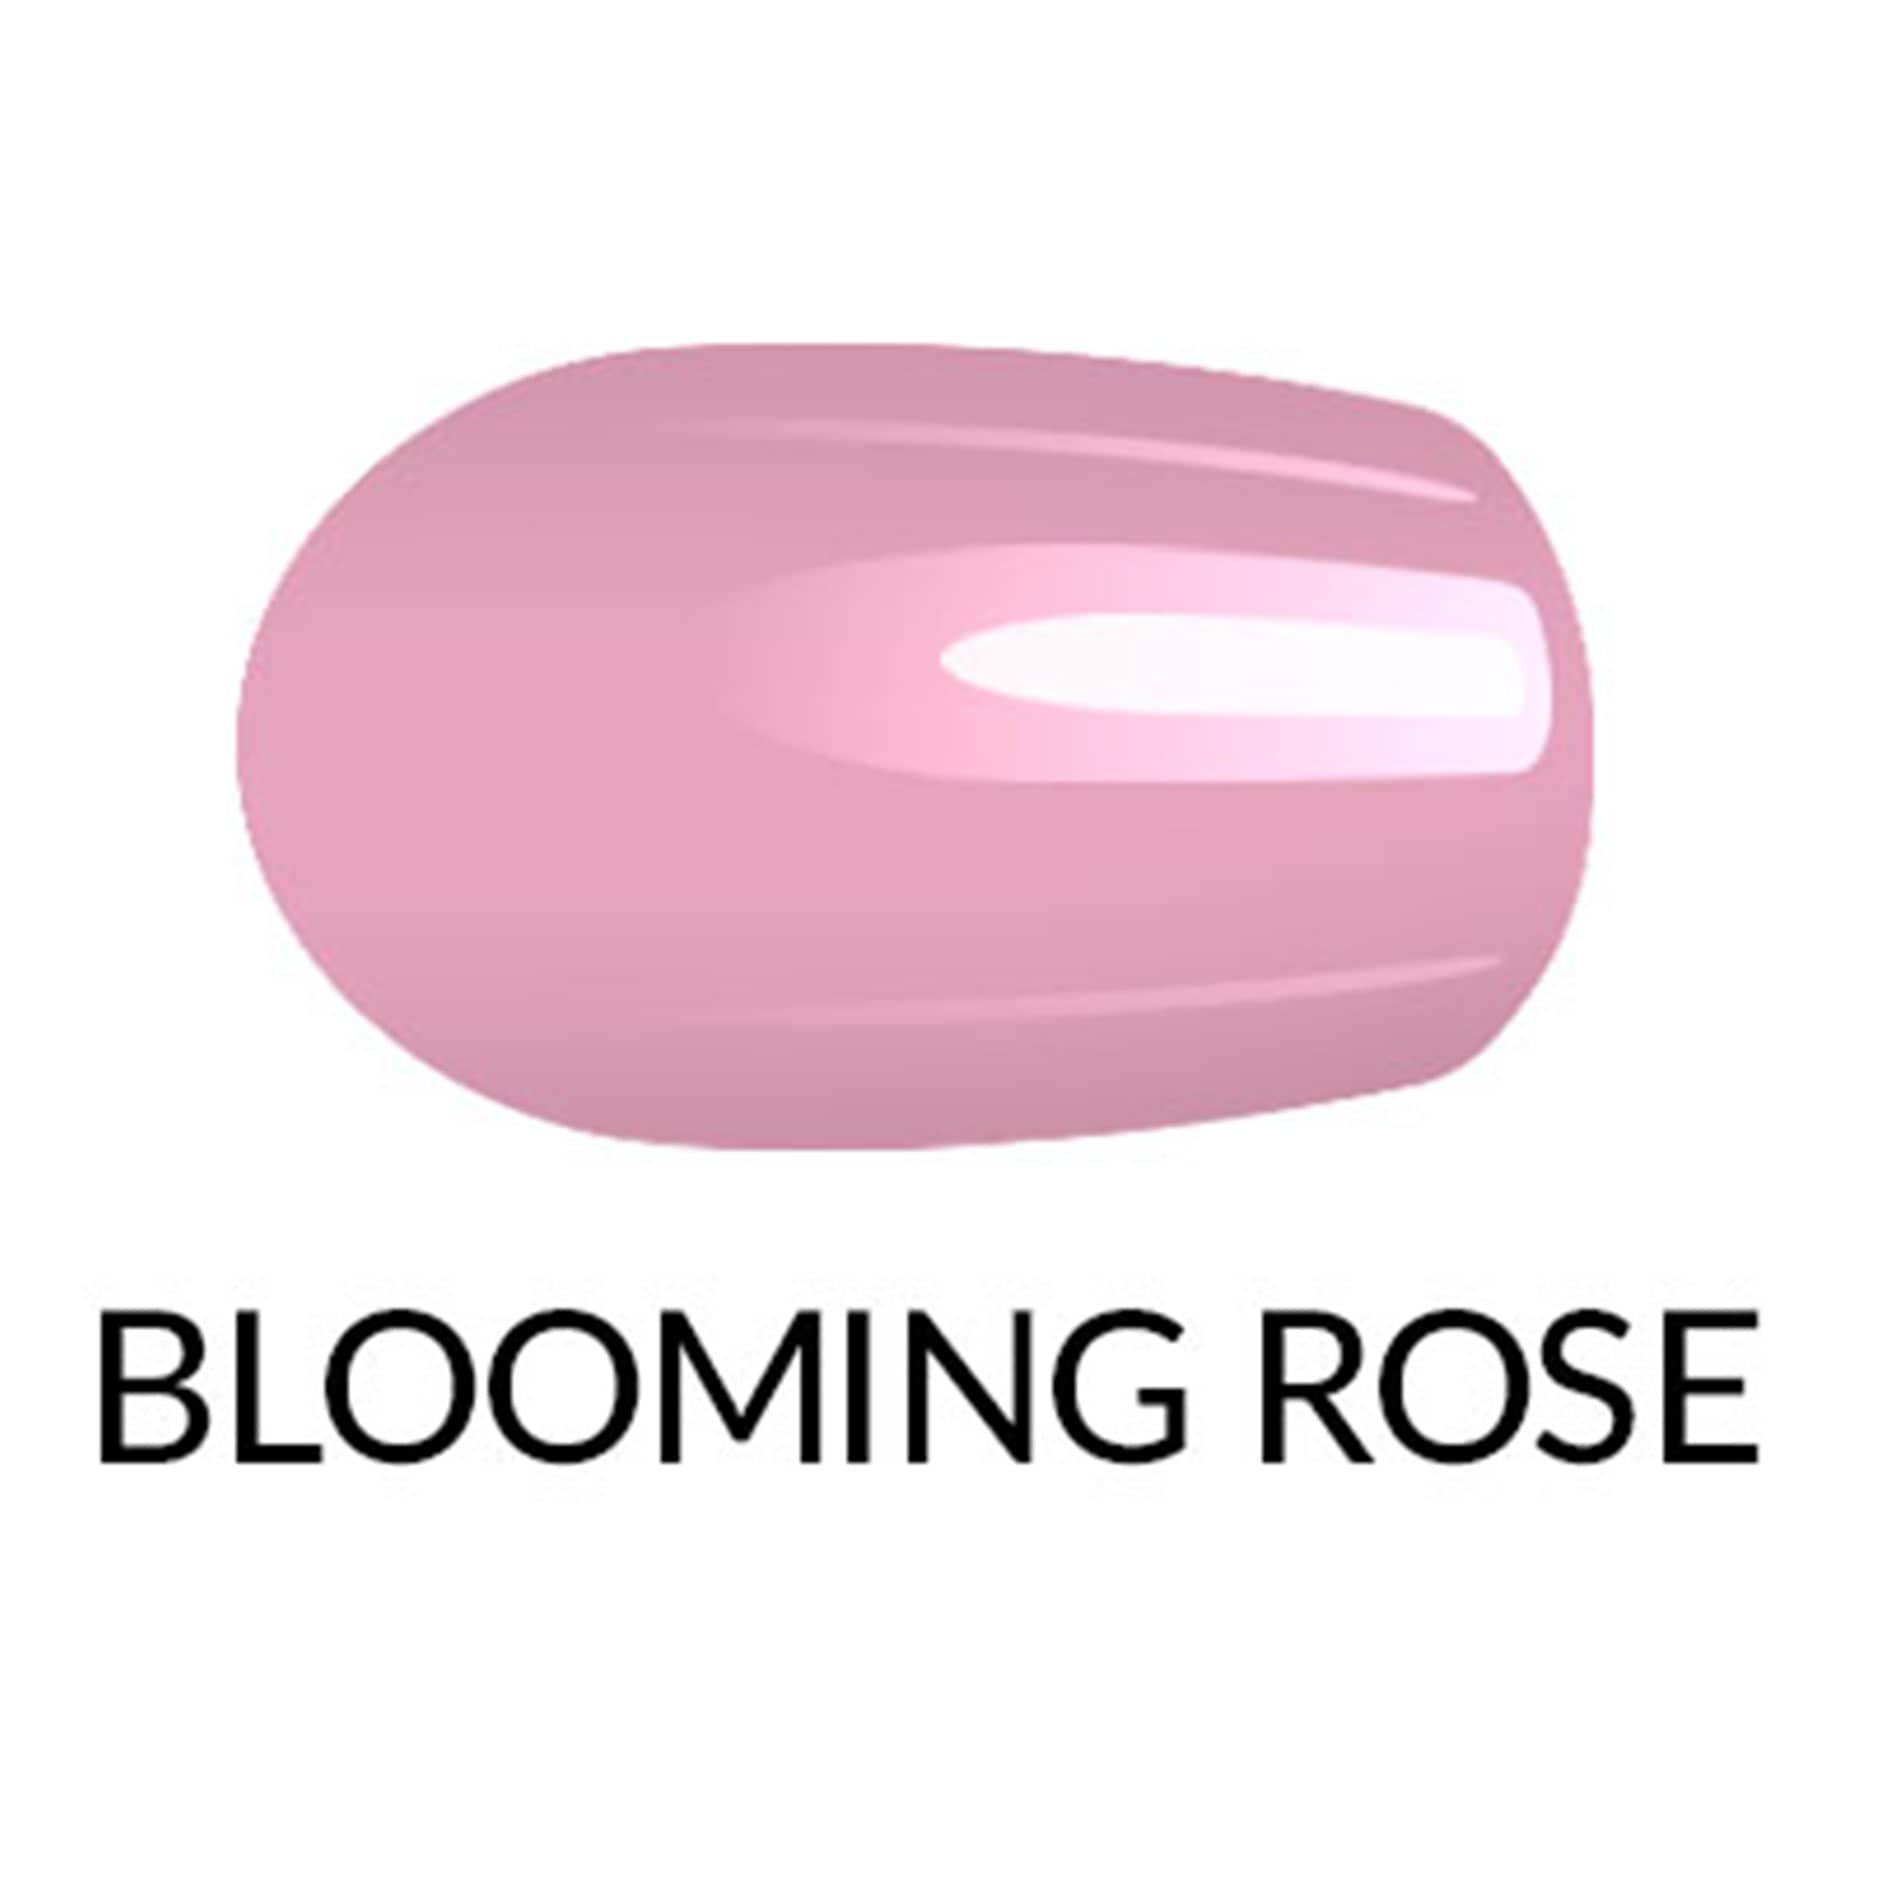 Nagellack-Gel-Finish-Blooming-Rose-603154